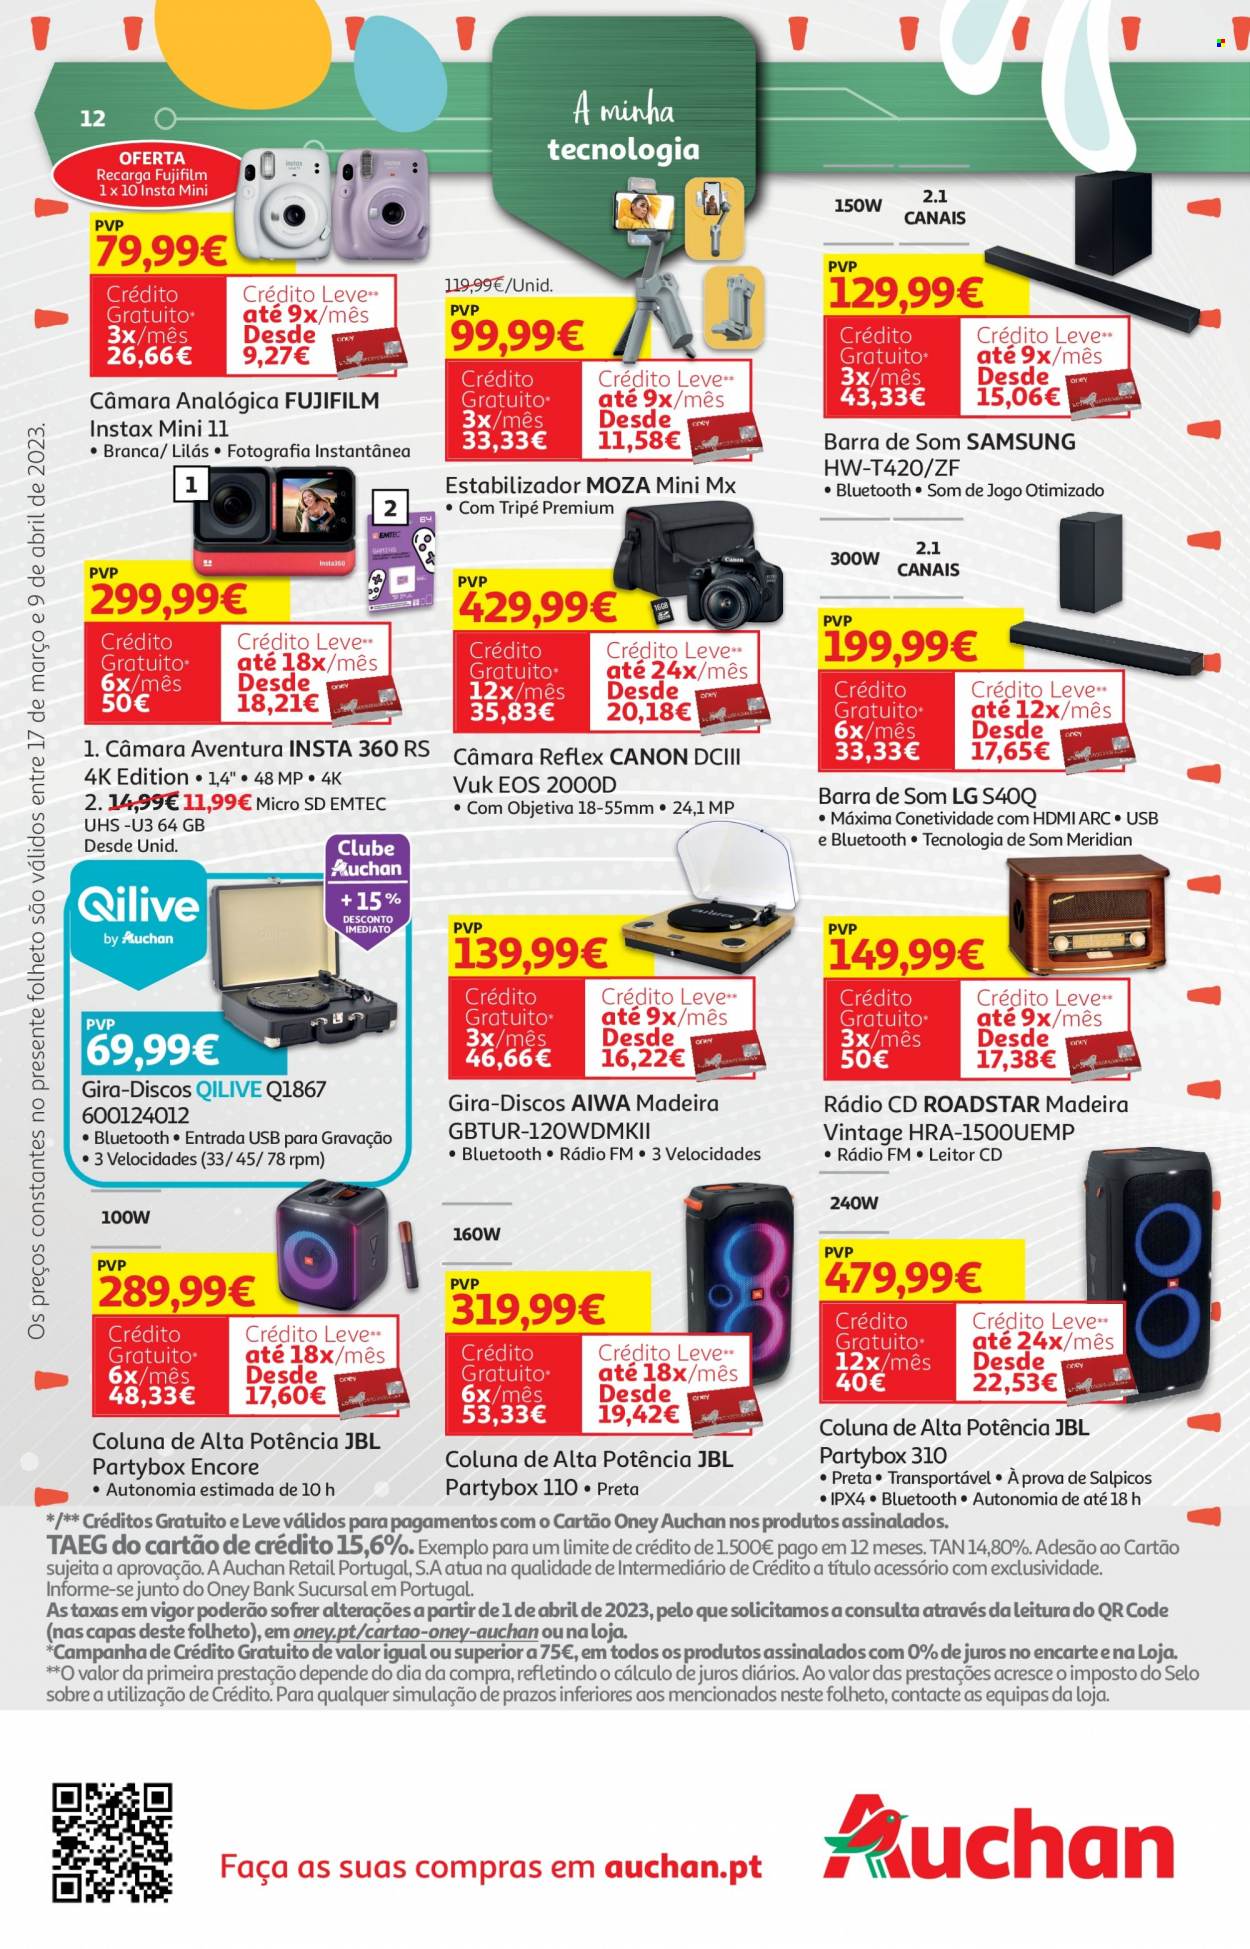 thumbnail - Folheto Auchan - 17.3.2023 - 9.4.2023 - Produtos em promoção - Samsung, LG, Canon, Qilive, coluna de som. Página 12.